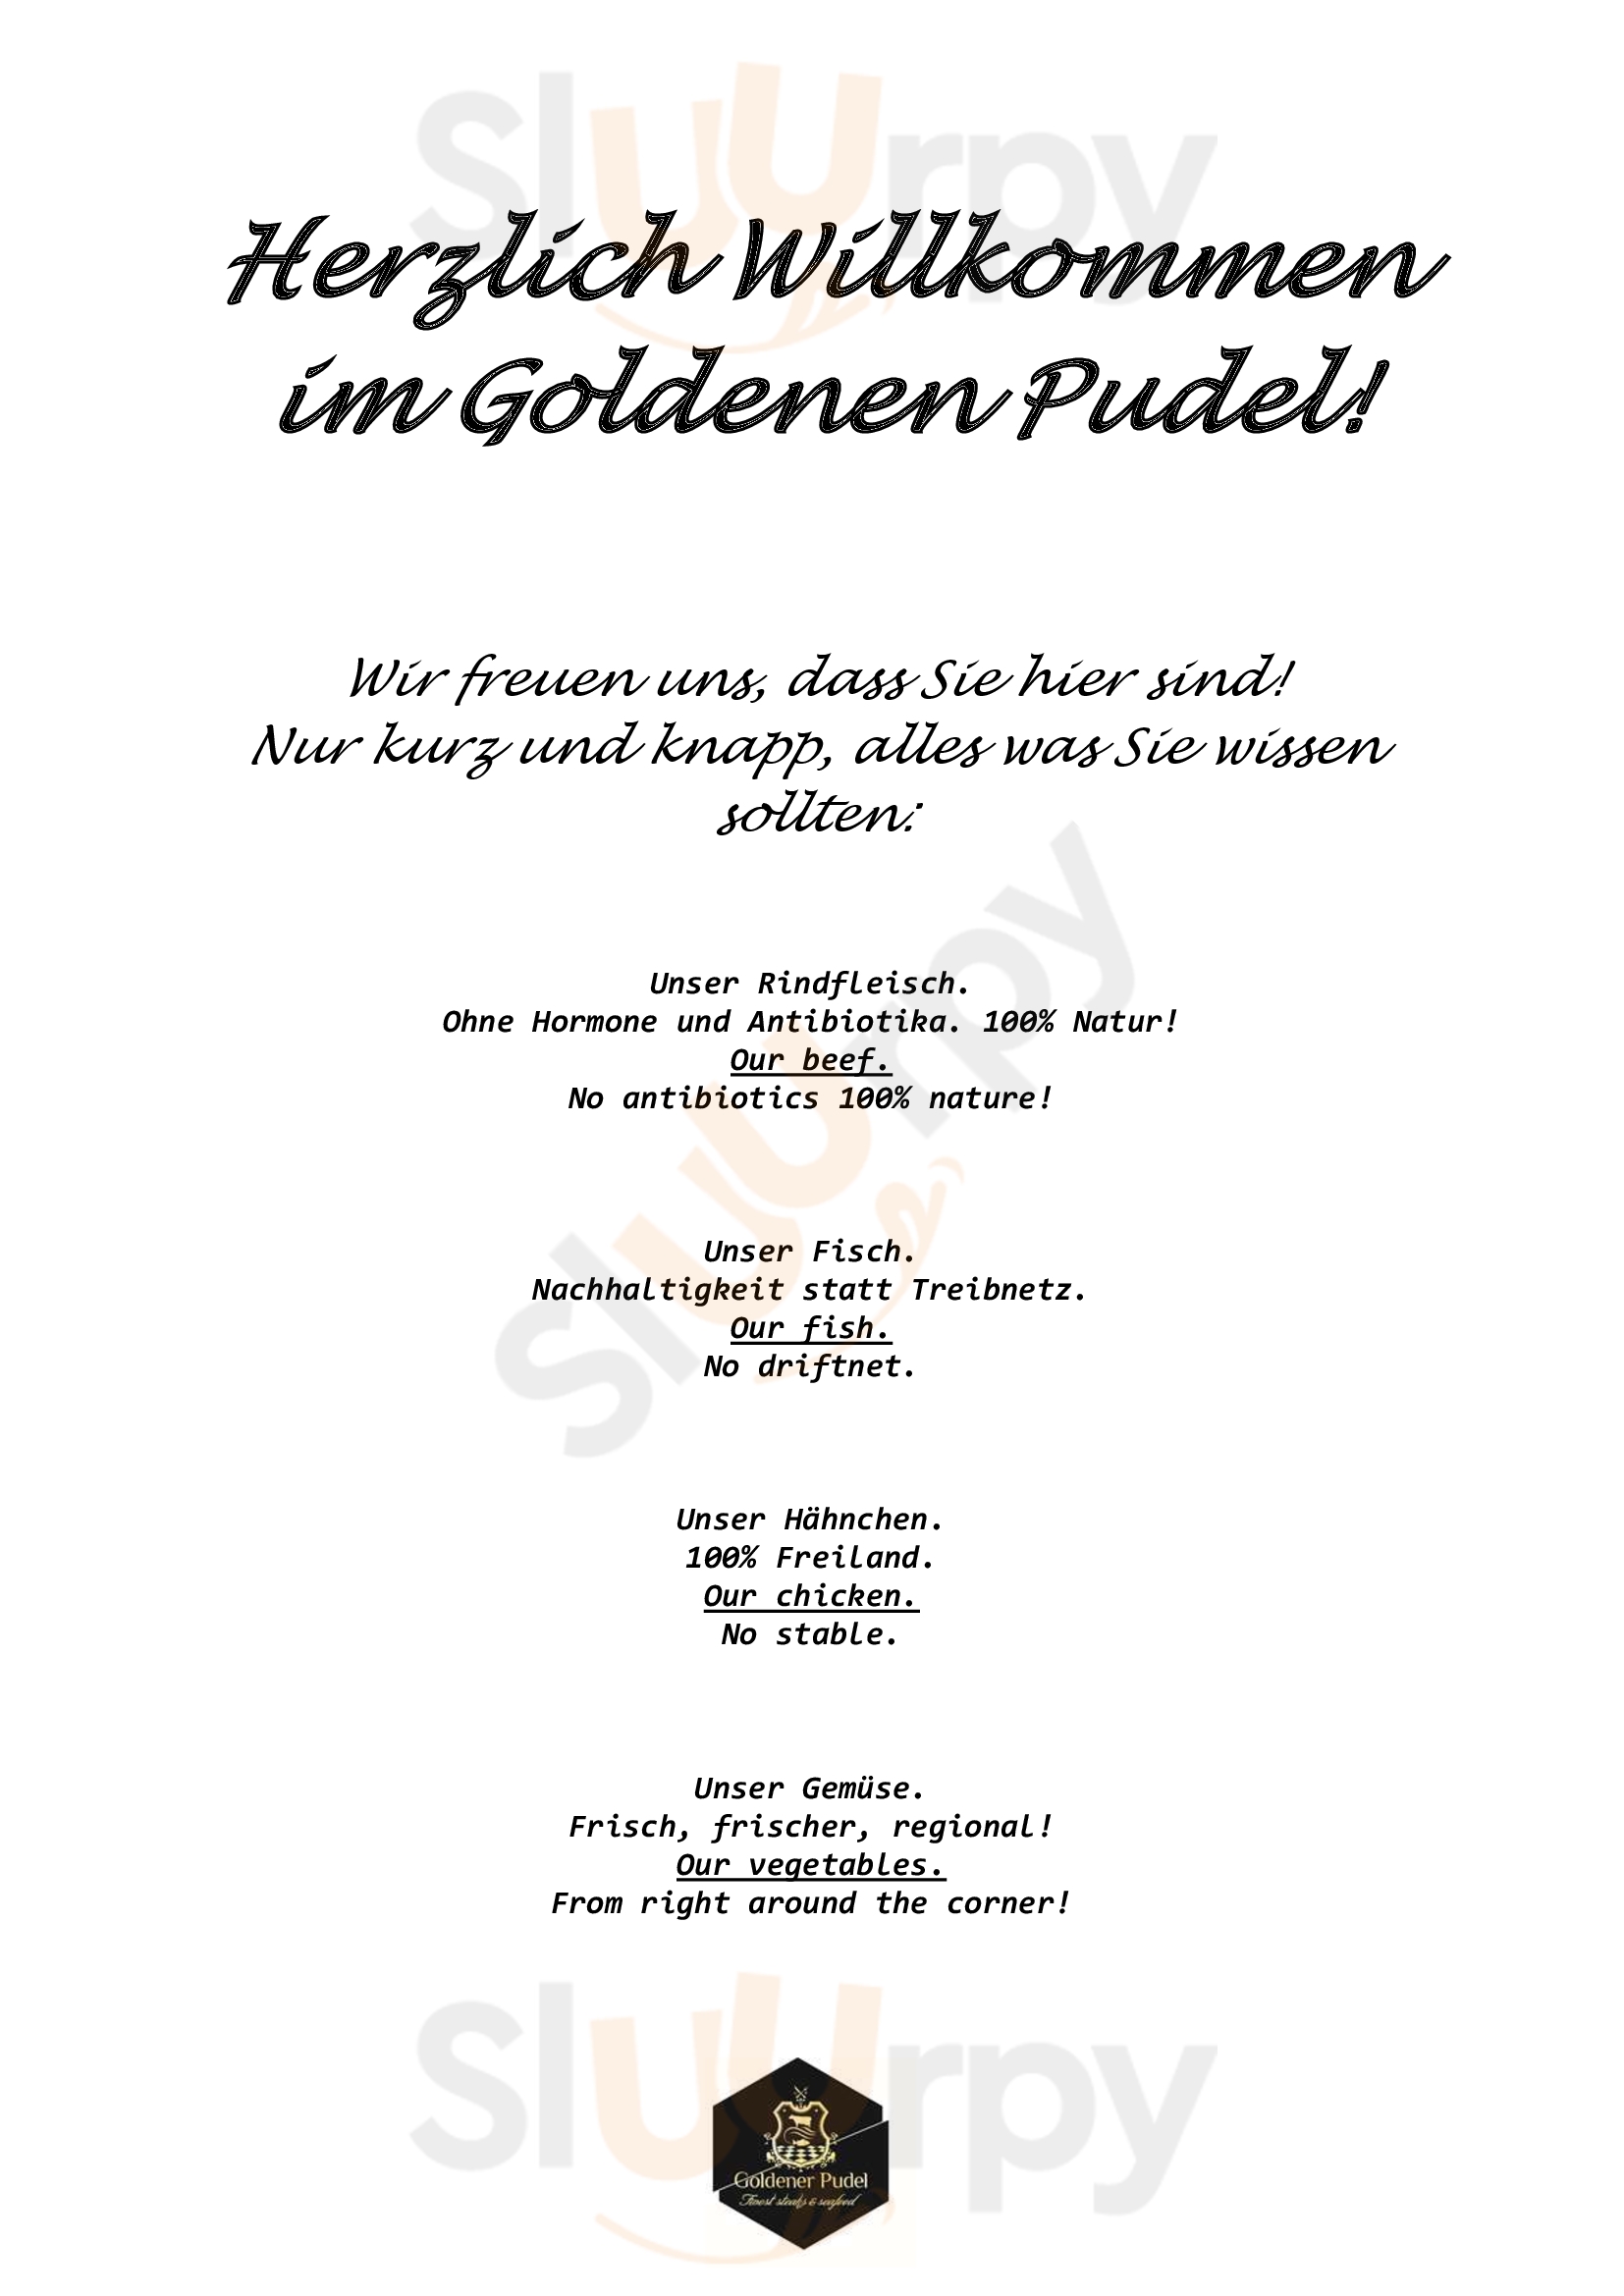 Goldener Pudel Nürnberg Menu - 1